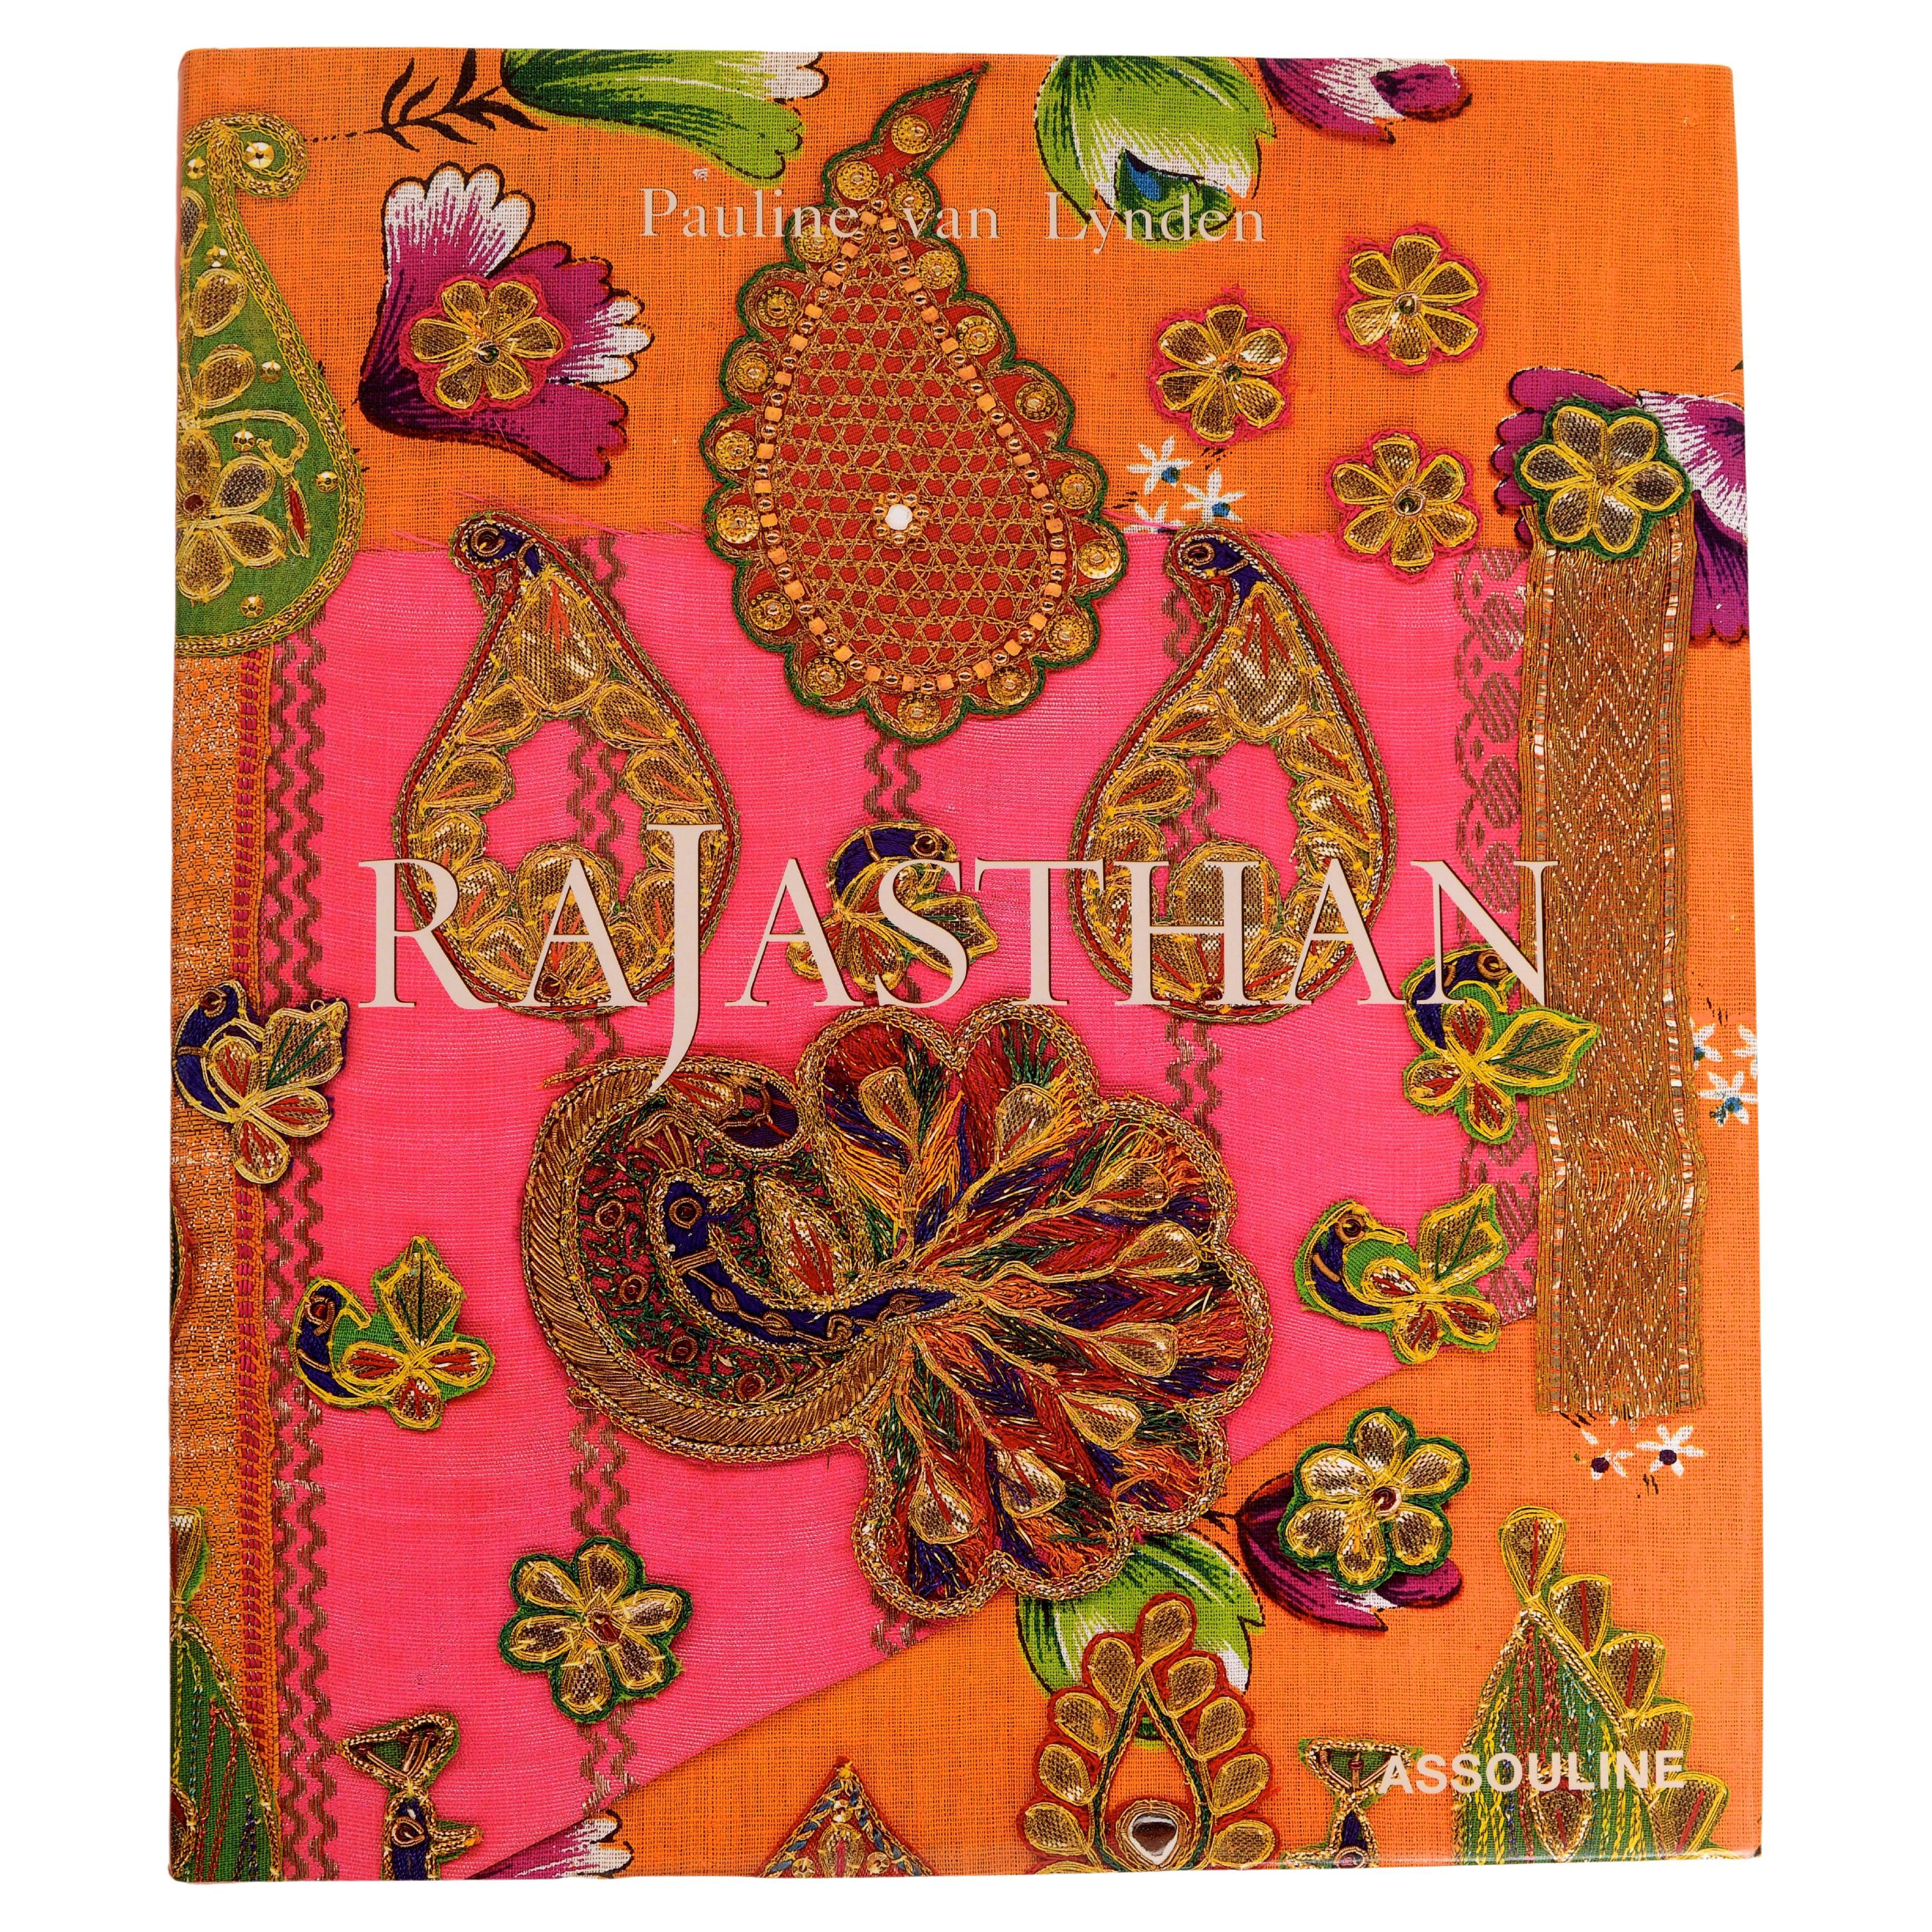 Rajasthan by Pauline Van Lynden, 1st Ed For Sale